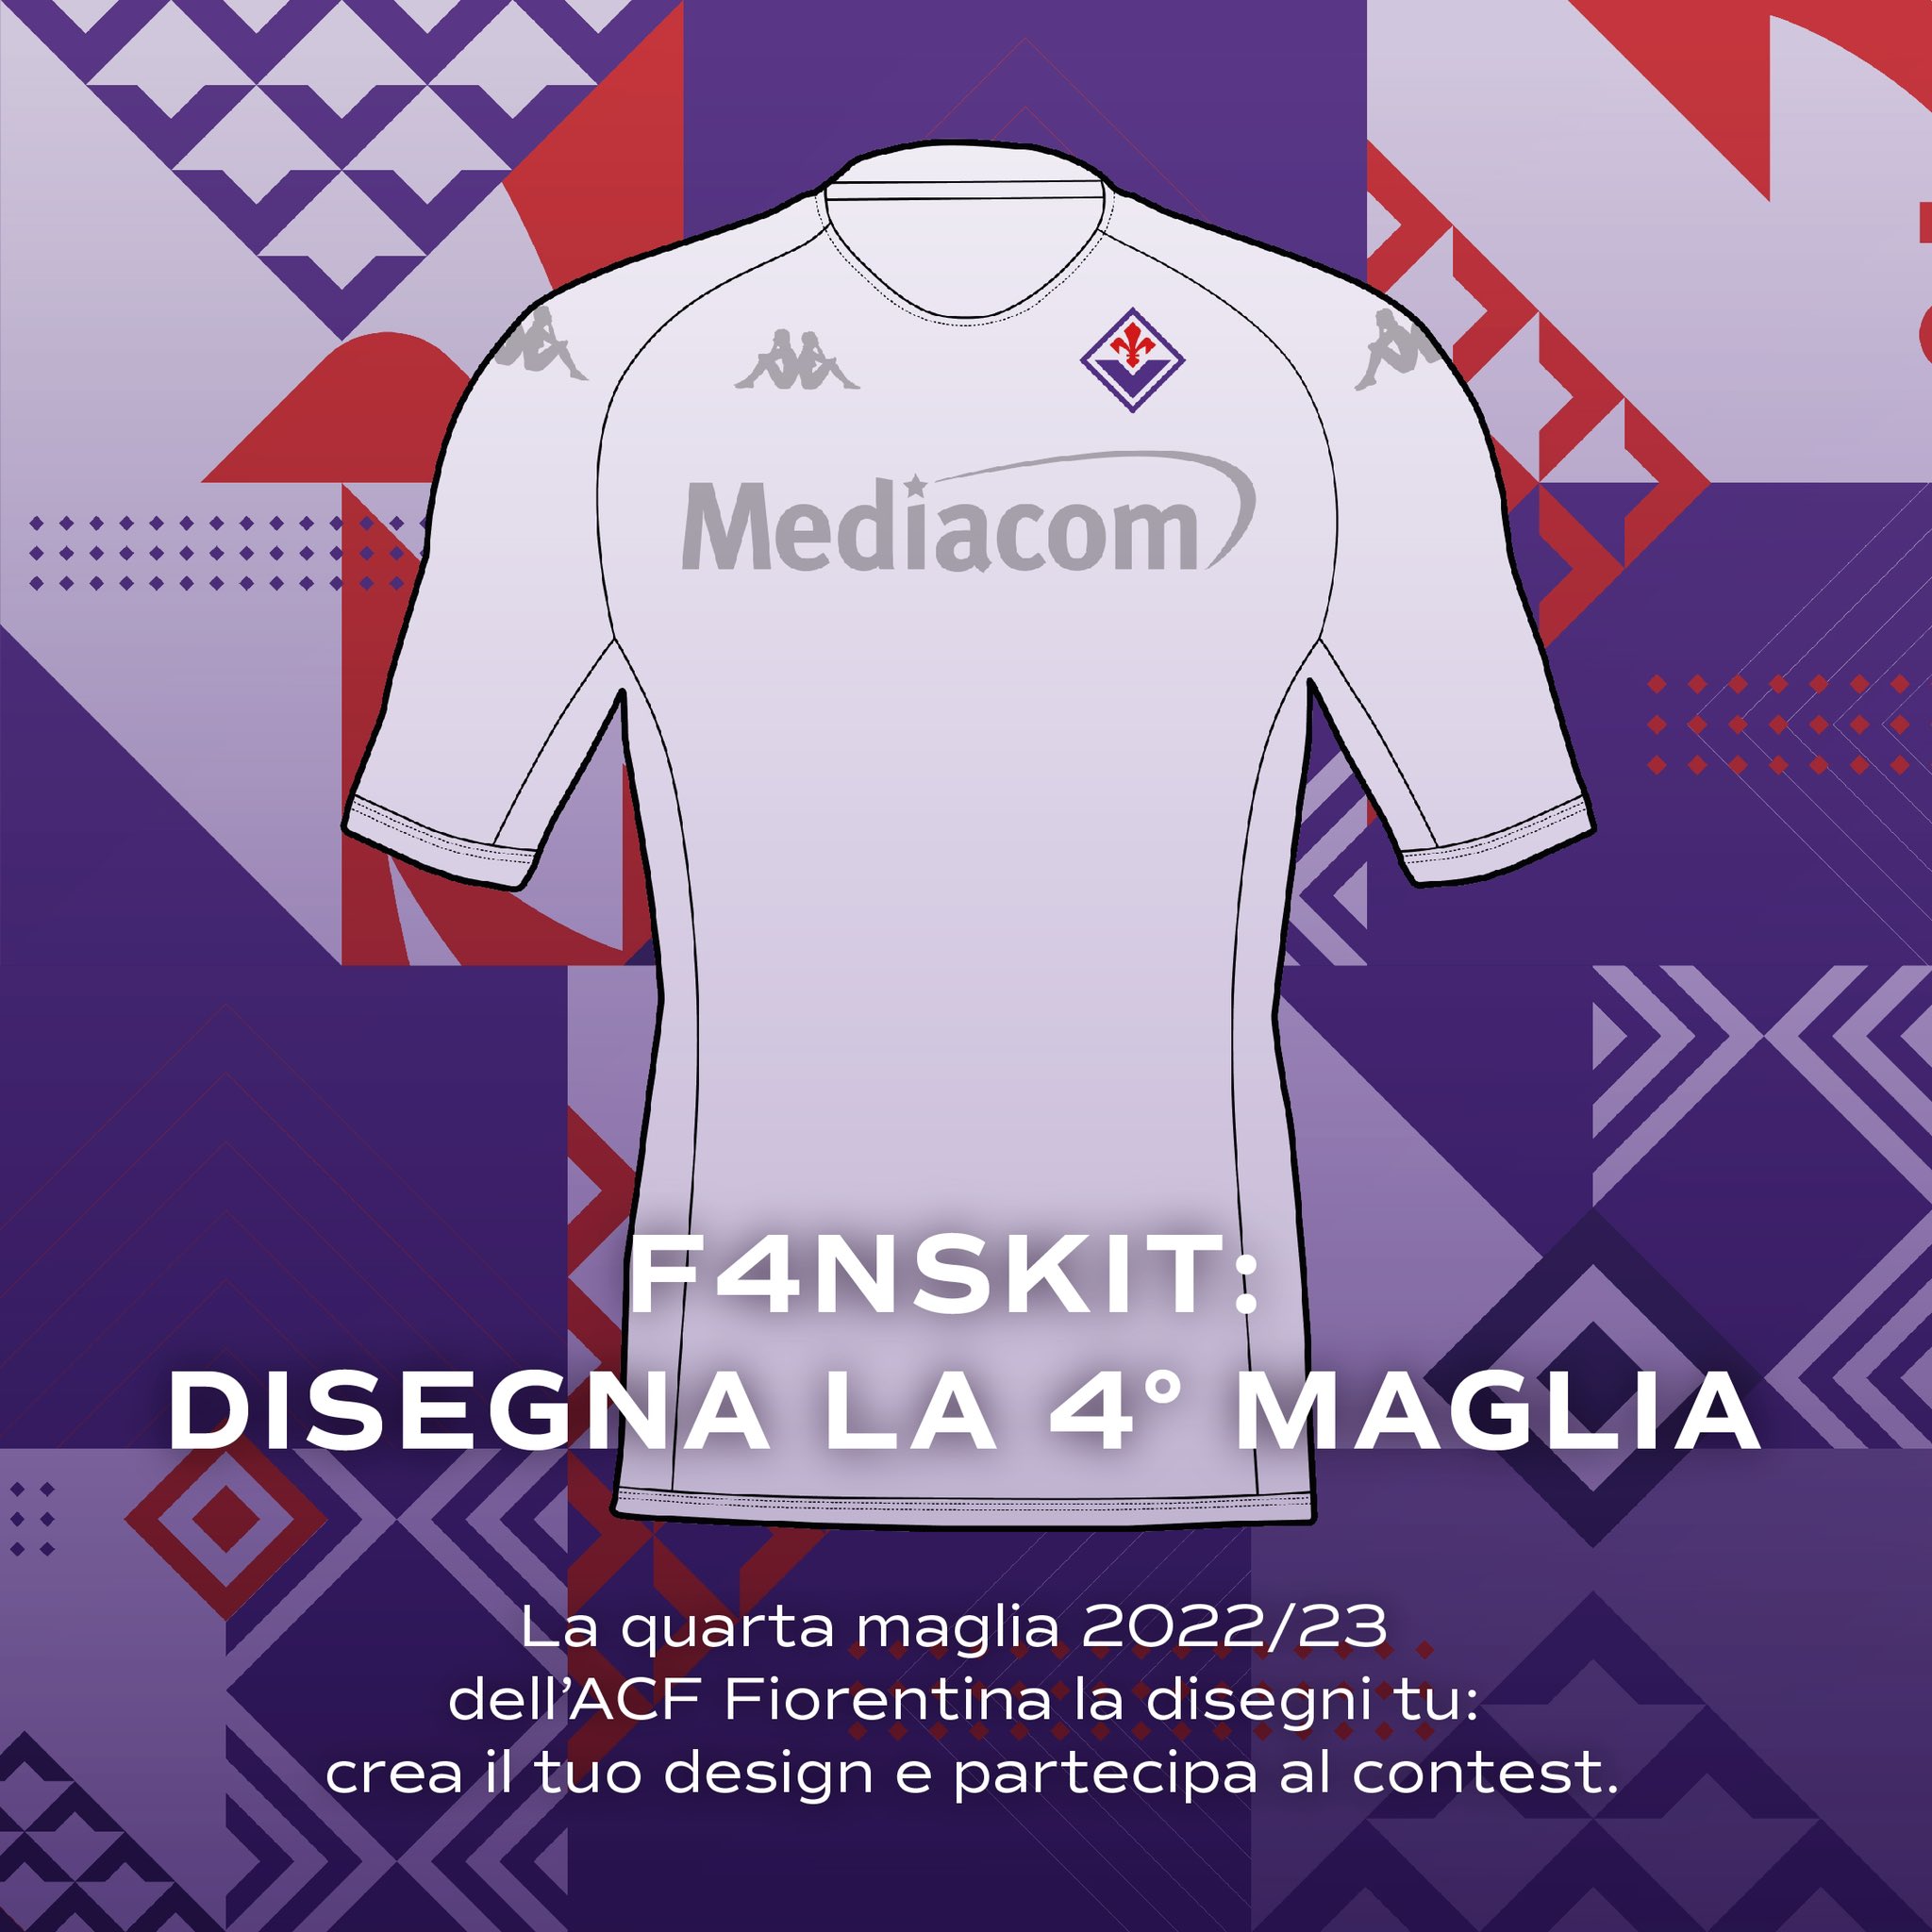 ACF Fiorentina on X: "La quarta maglia 2022/23 dell'ACF Fiorentina la  disegni tu: crea il tuo design e partecipa al contest💜 Partecipa:  https://t.co/nRyDq77j0Y @KappaItalia #playtobedifferent #weareiviola  #forzaviola #fiorentina https://t.co ...